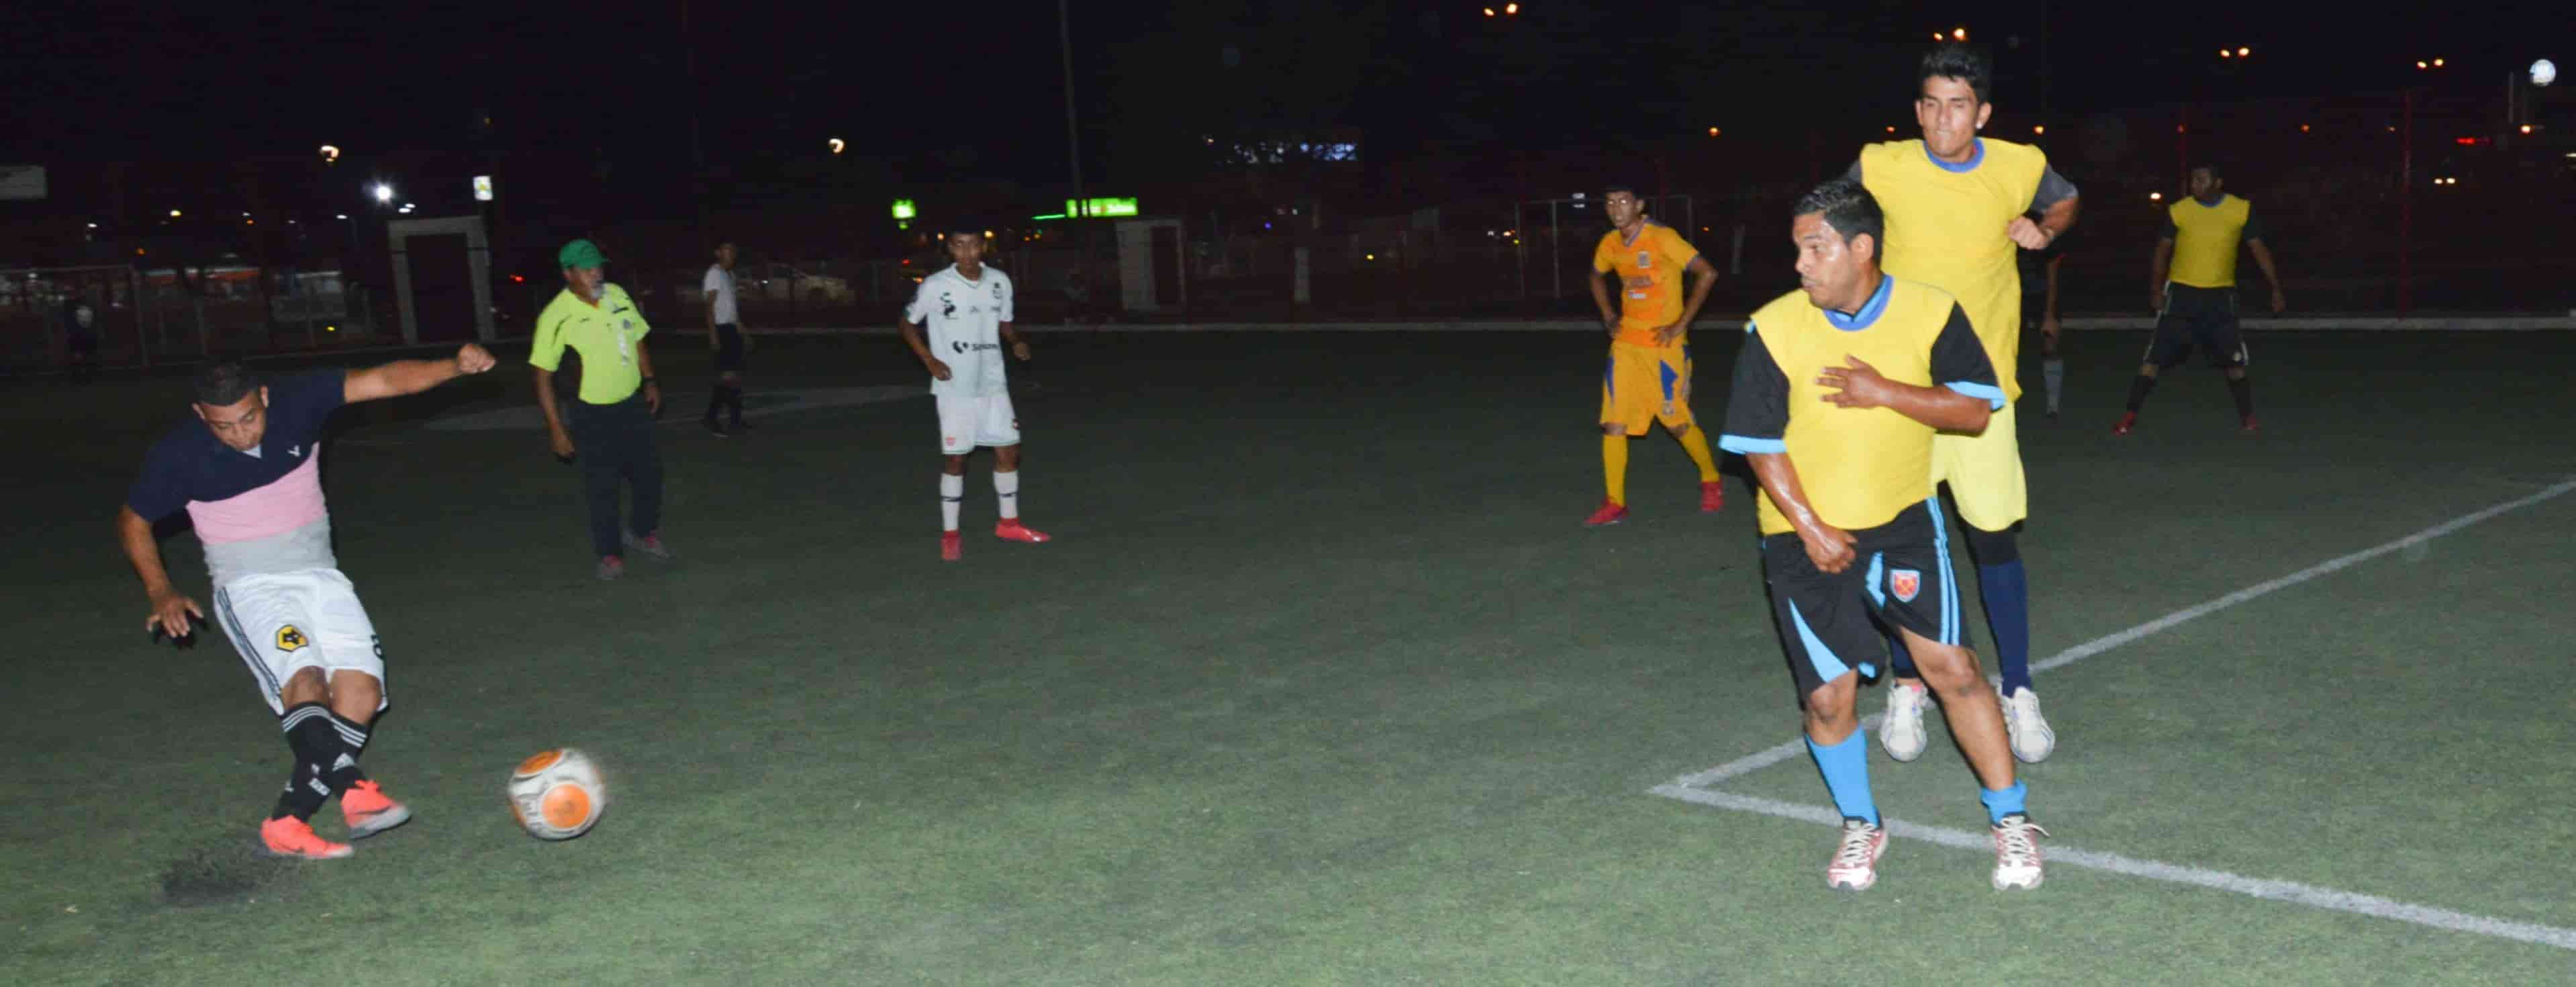 Llena la canasta Cerlo FC a Arsenal en la jornada 9 del futsal 7 Barrios Unidos